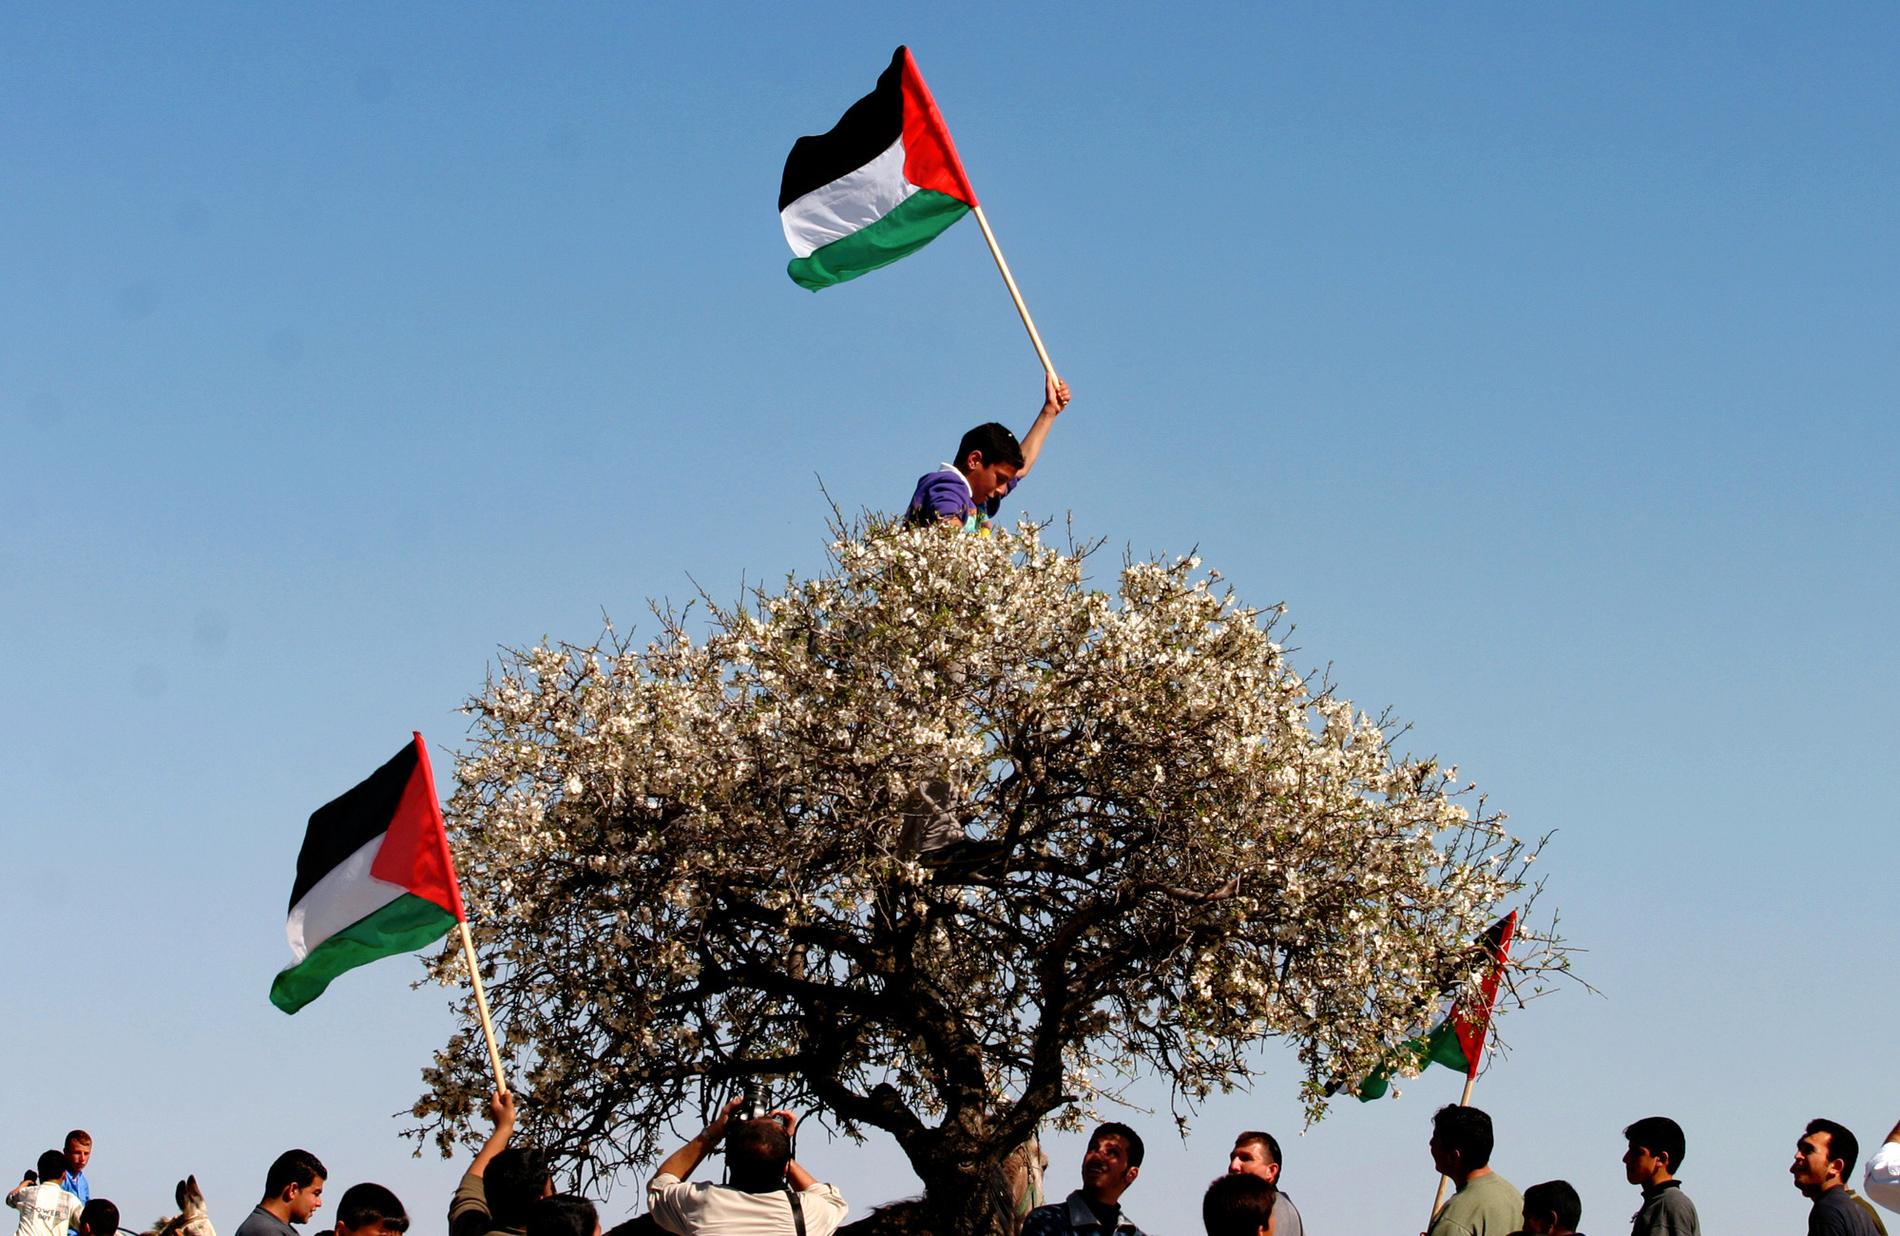 ”Det finns ett fritt Gaza, ett fritt Palestina bortom där vi befinner oss nu. Jag undrar hur den platsen ser ut” skriver Burcu Sahin.